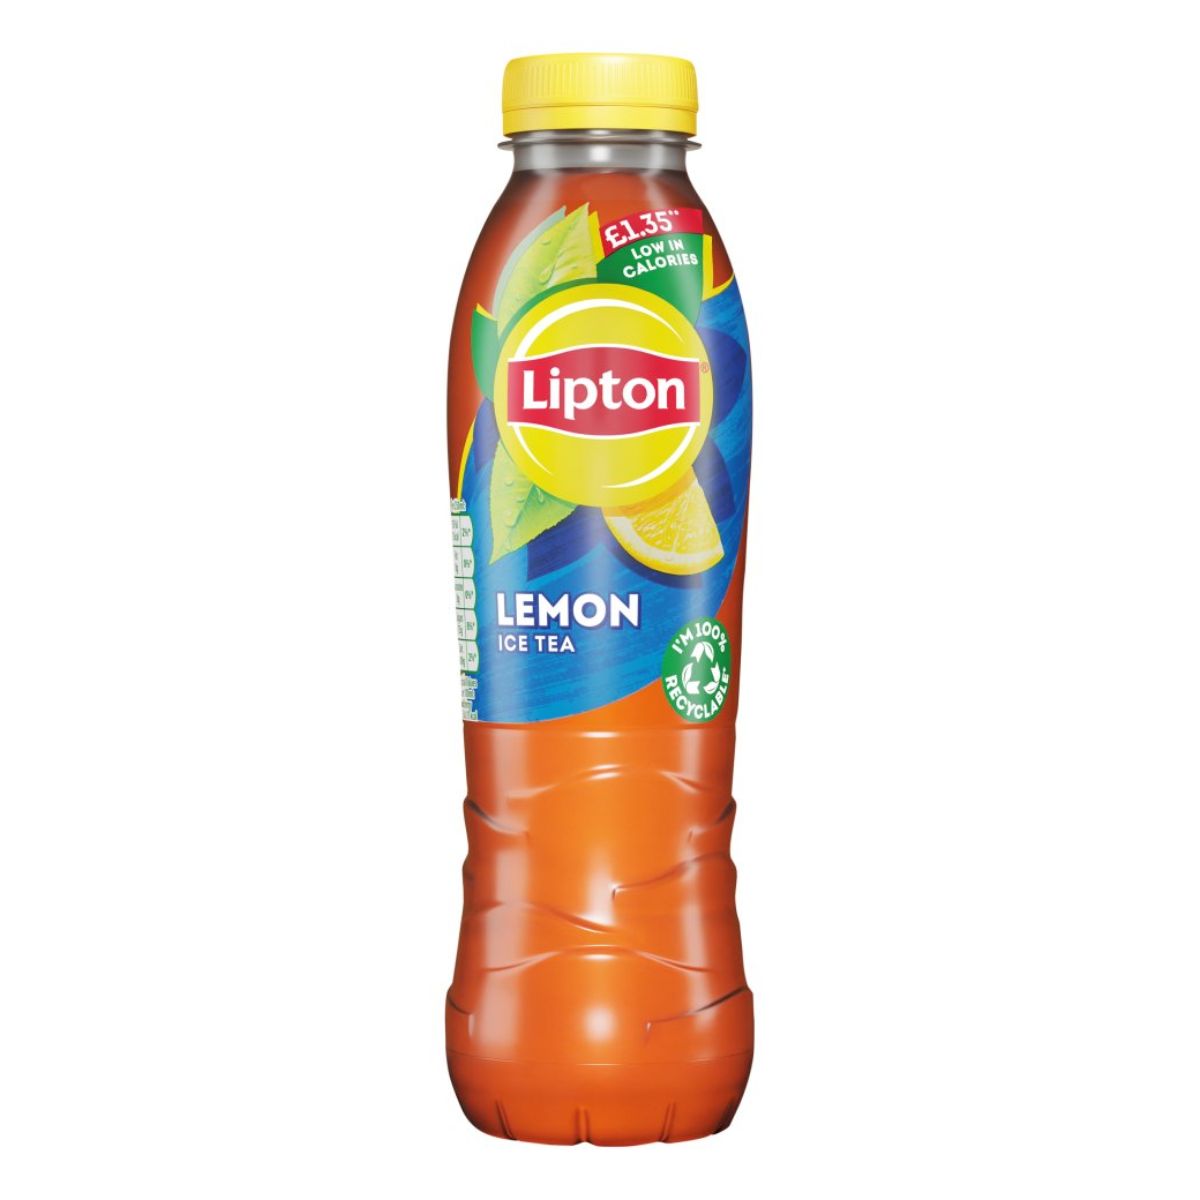 Bottle of Lipton - Lemon Ice Tea - 500ml.